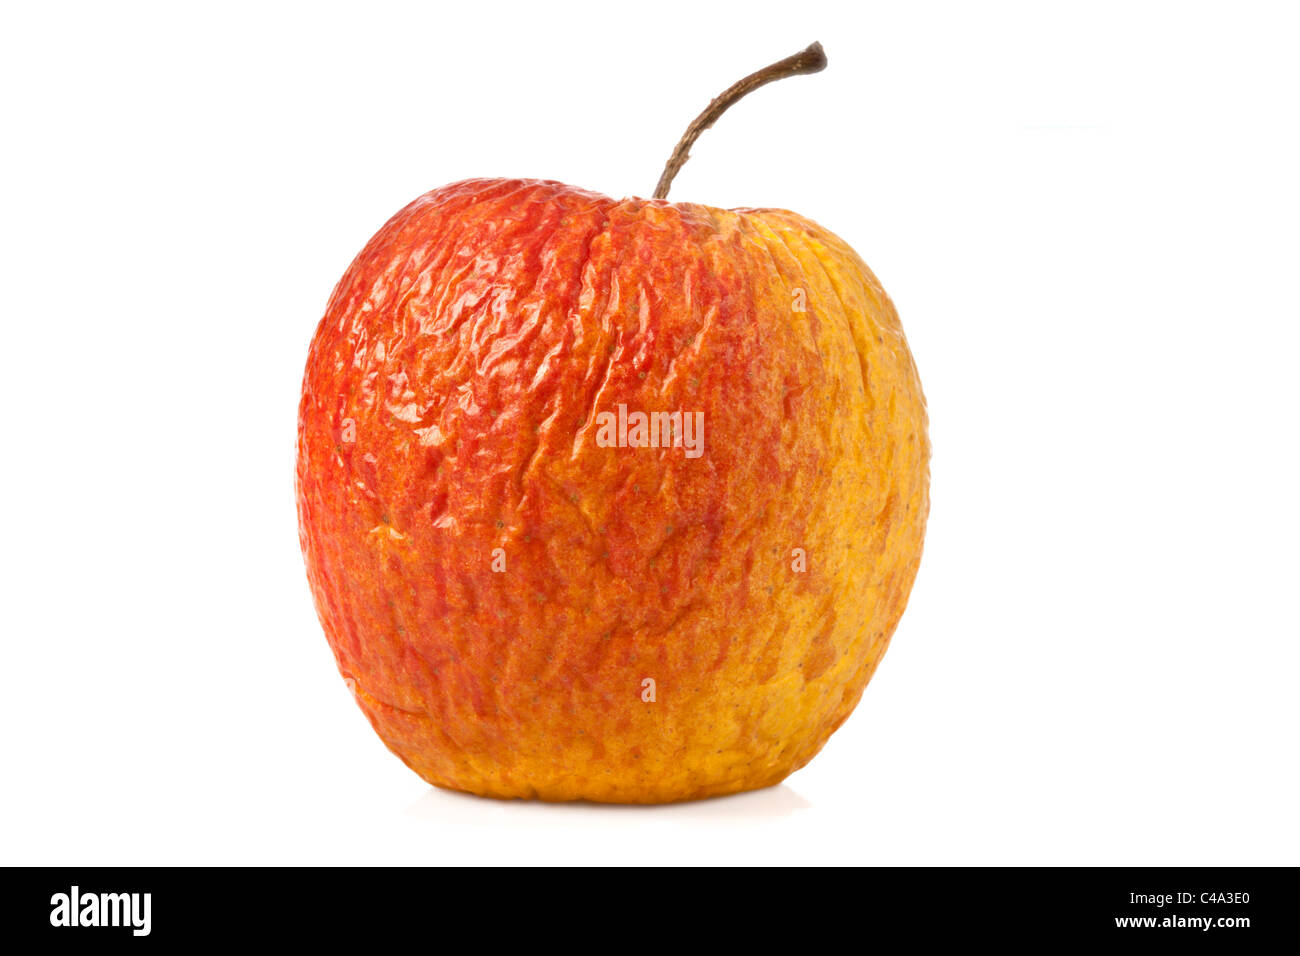 Apple séché sur fond blanc - Apfel, vertrocknet Banque D'Images